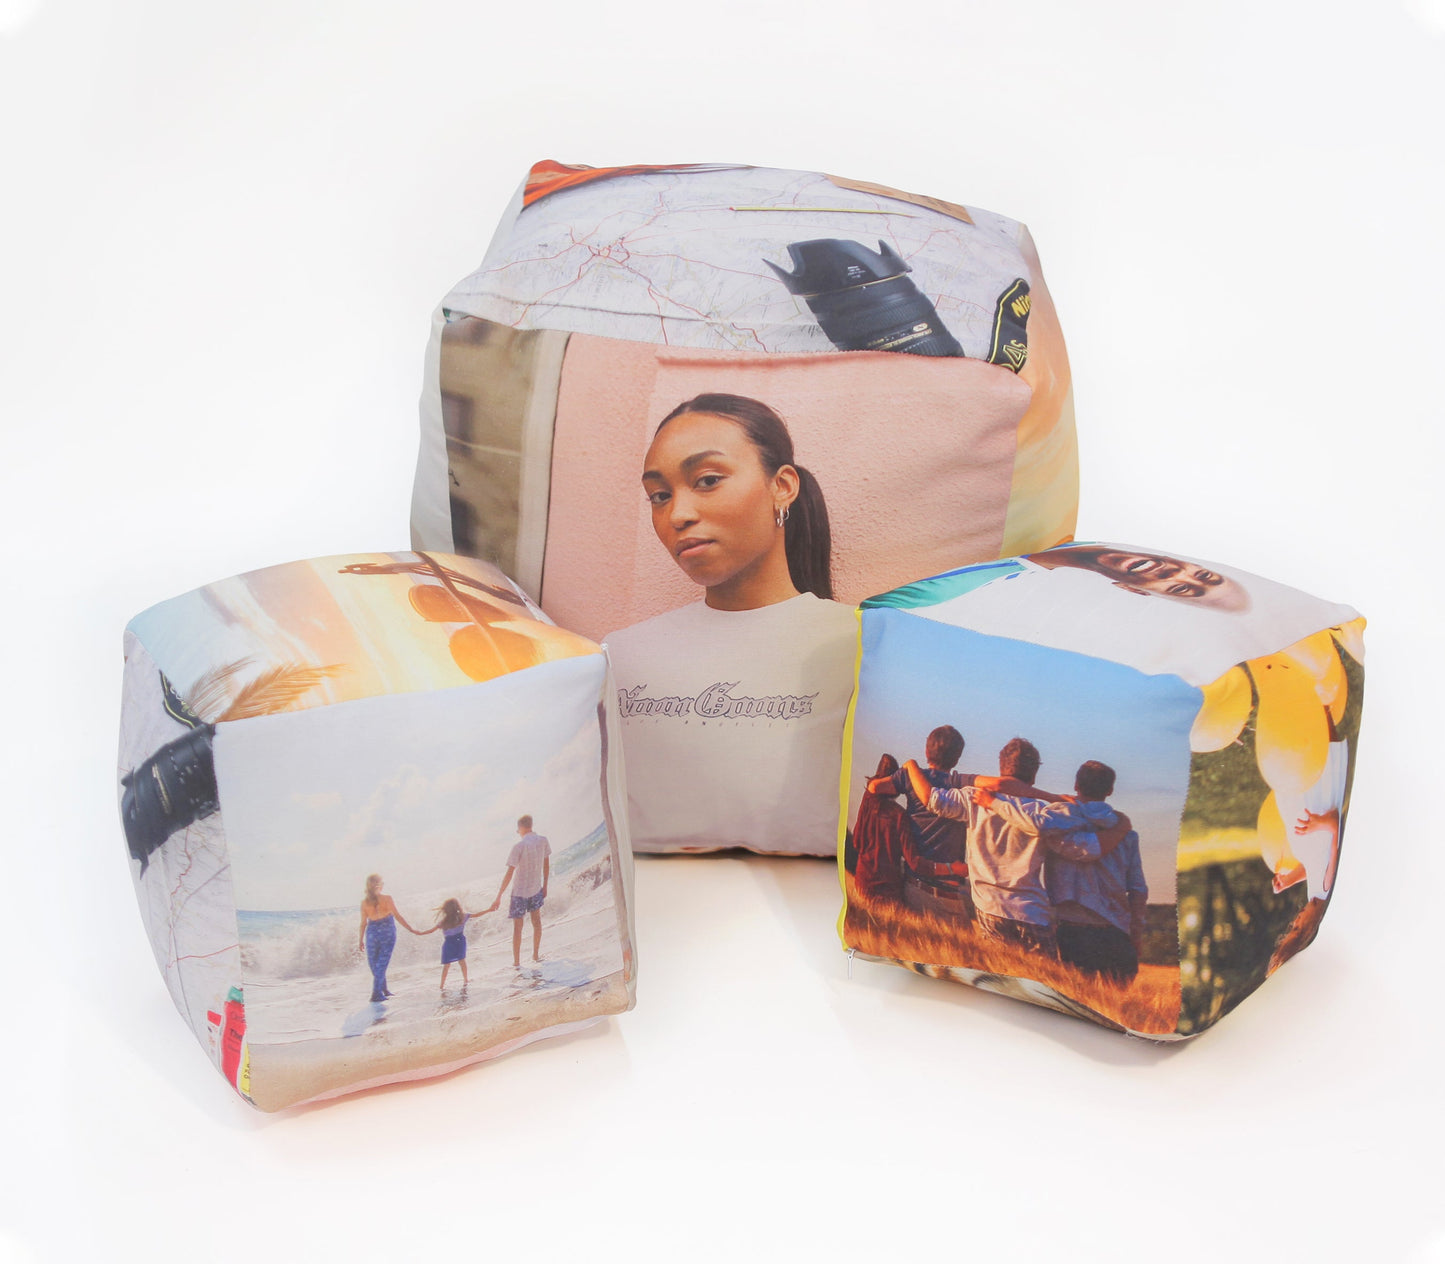 cube cushion collage photo. one 50x50cm cube cushion. two 25x25cm cube cushion